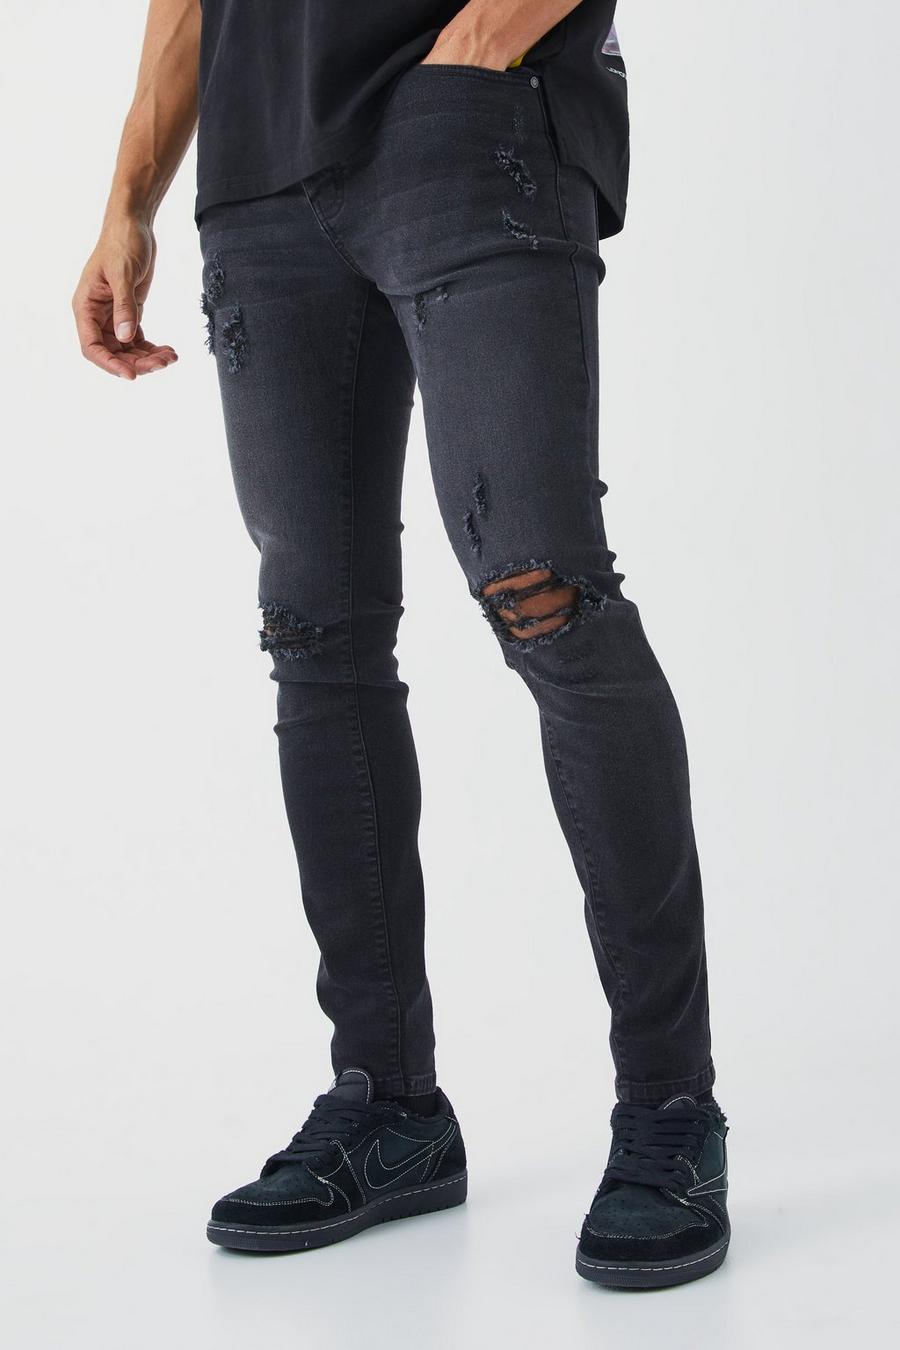 Jeans Skinny Fit Stretch con strappi estremi sul ginocchio, Washed black